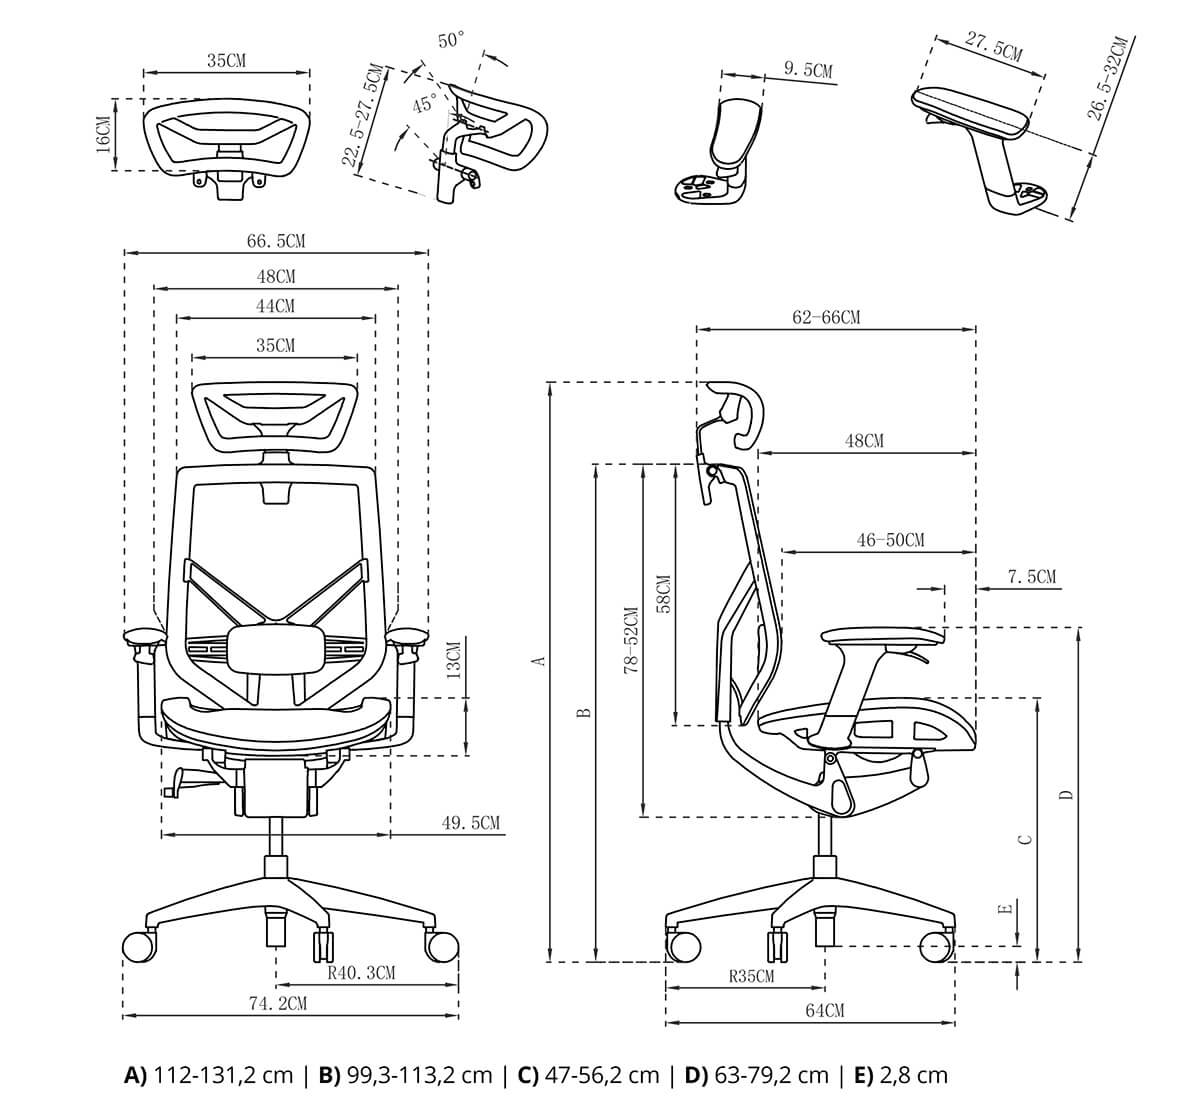 wymiary fotela spacetronik ergoline rysunek techniczny